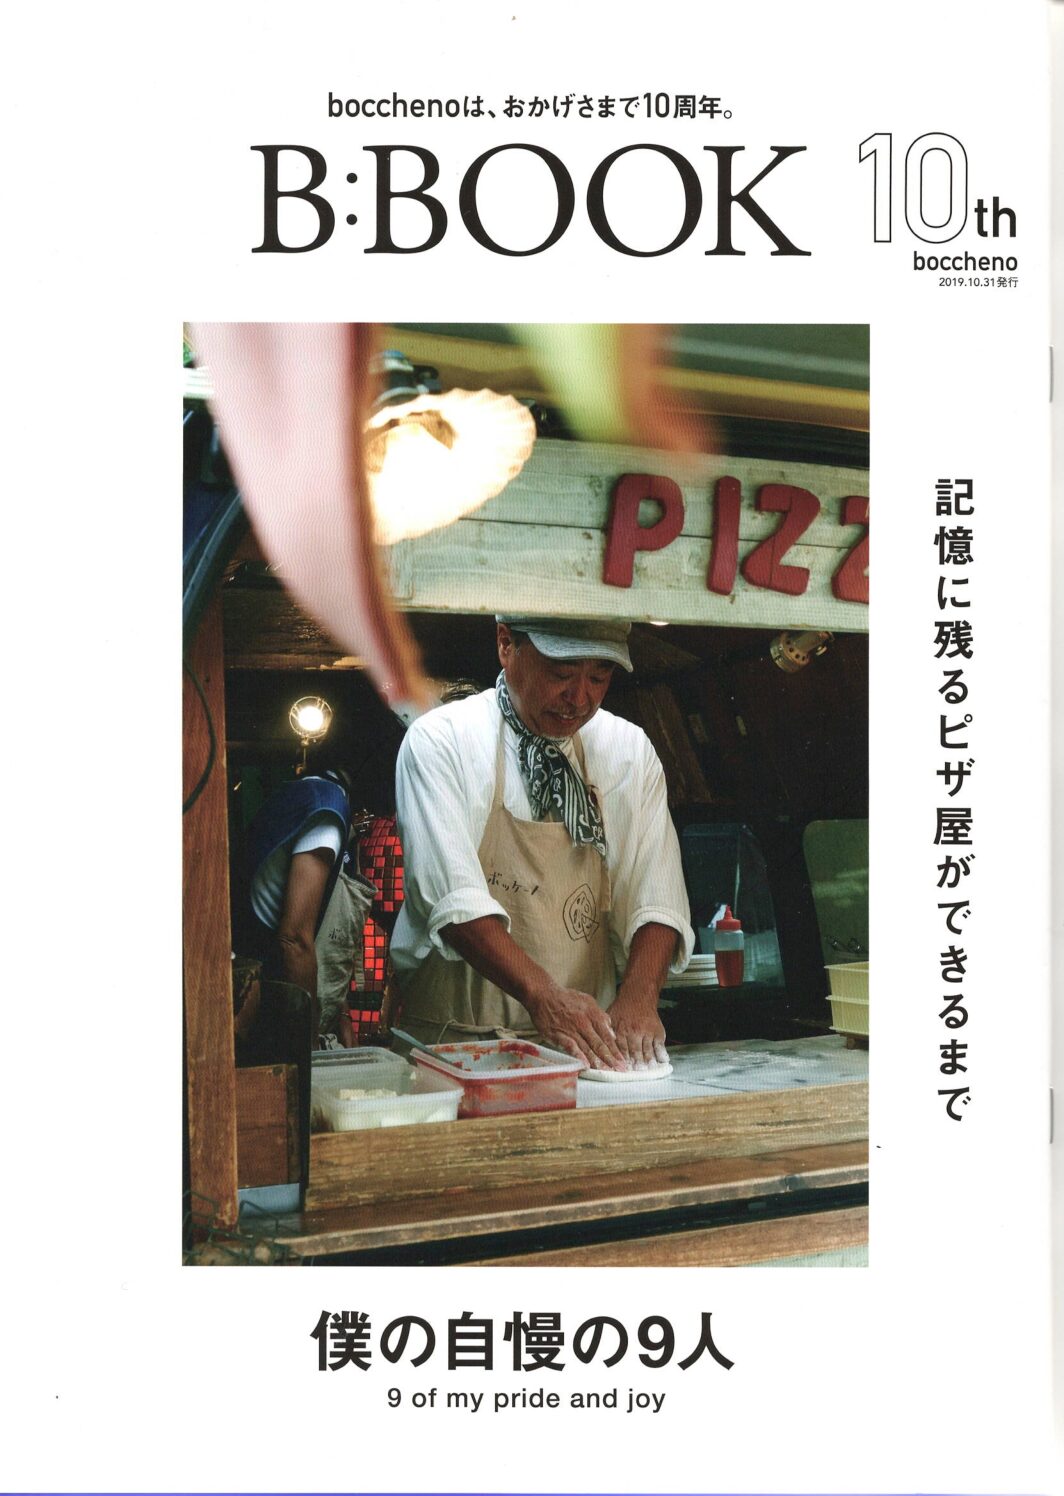 移動販売boccheno様の10周年記念誌「B:BOOK」出版のご案内